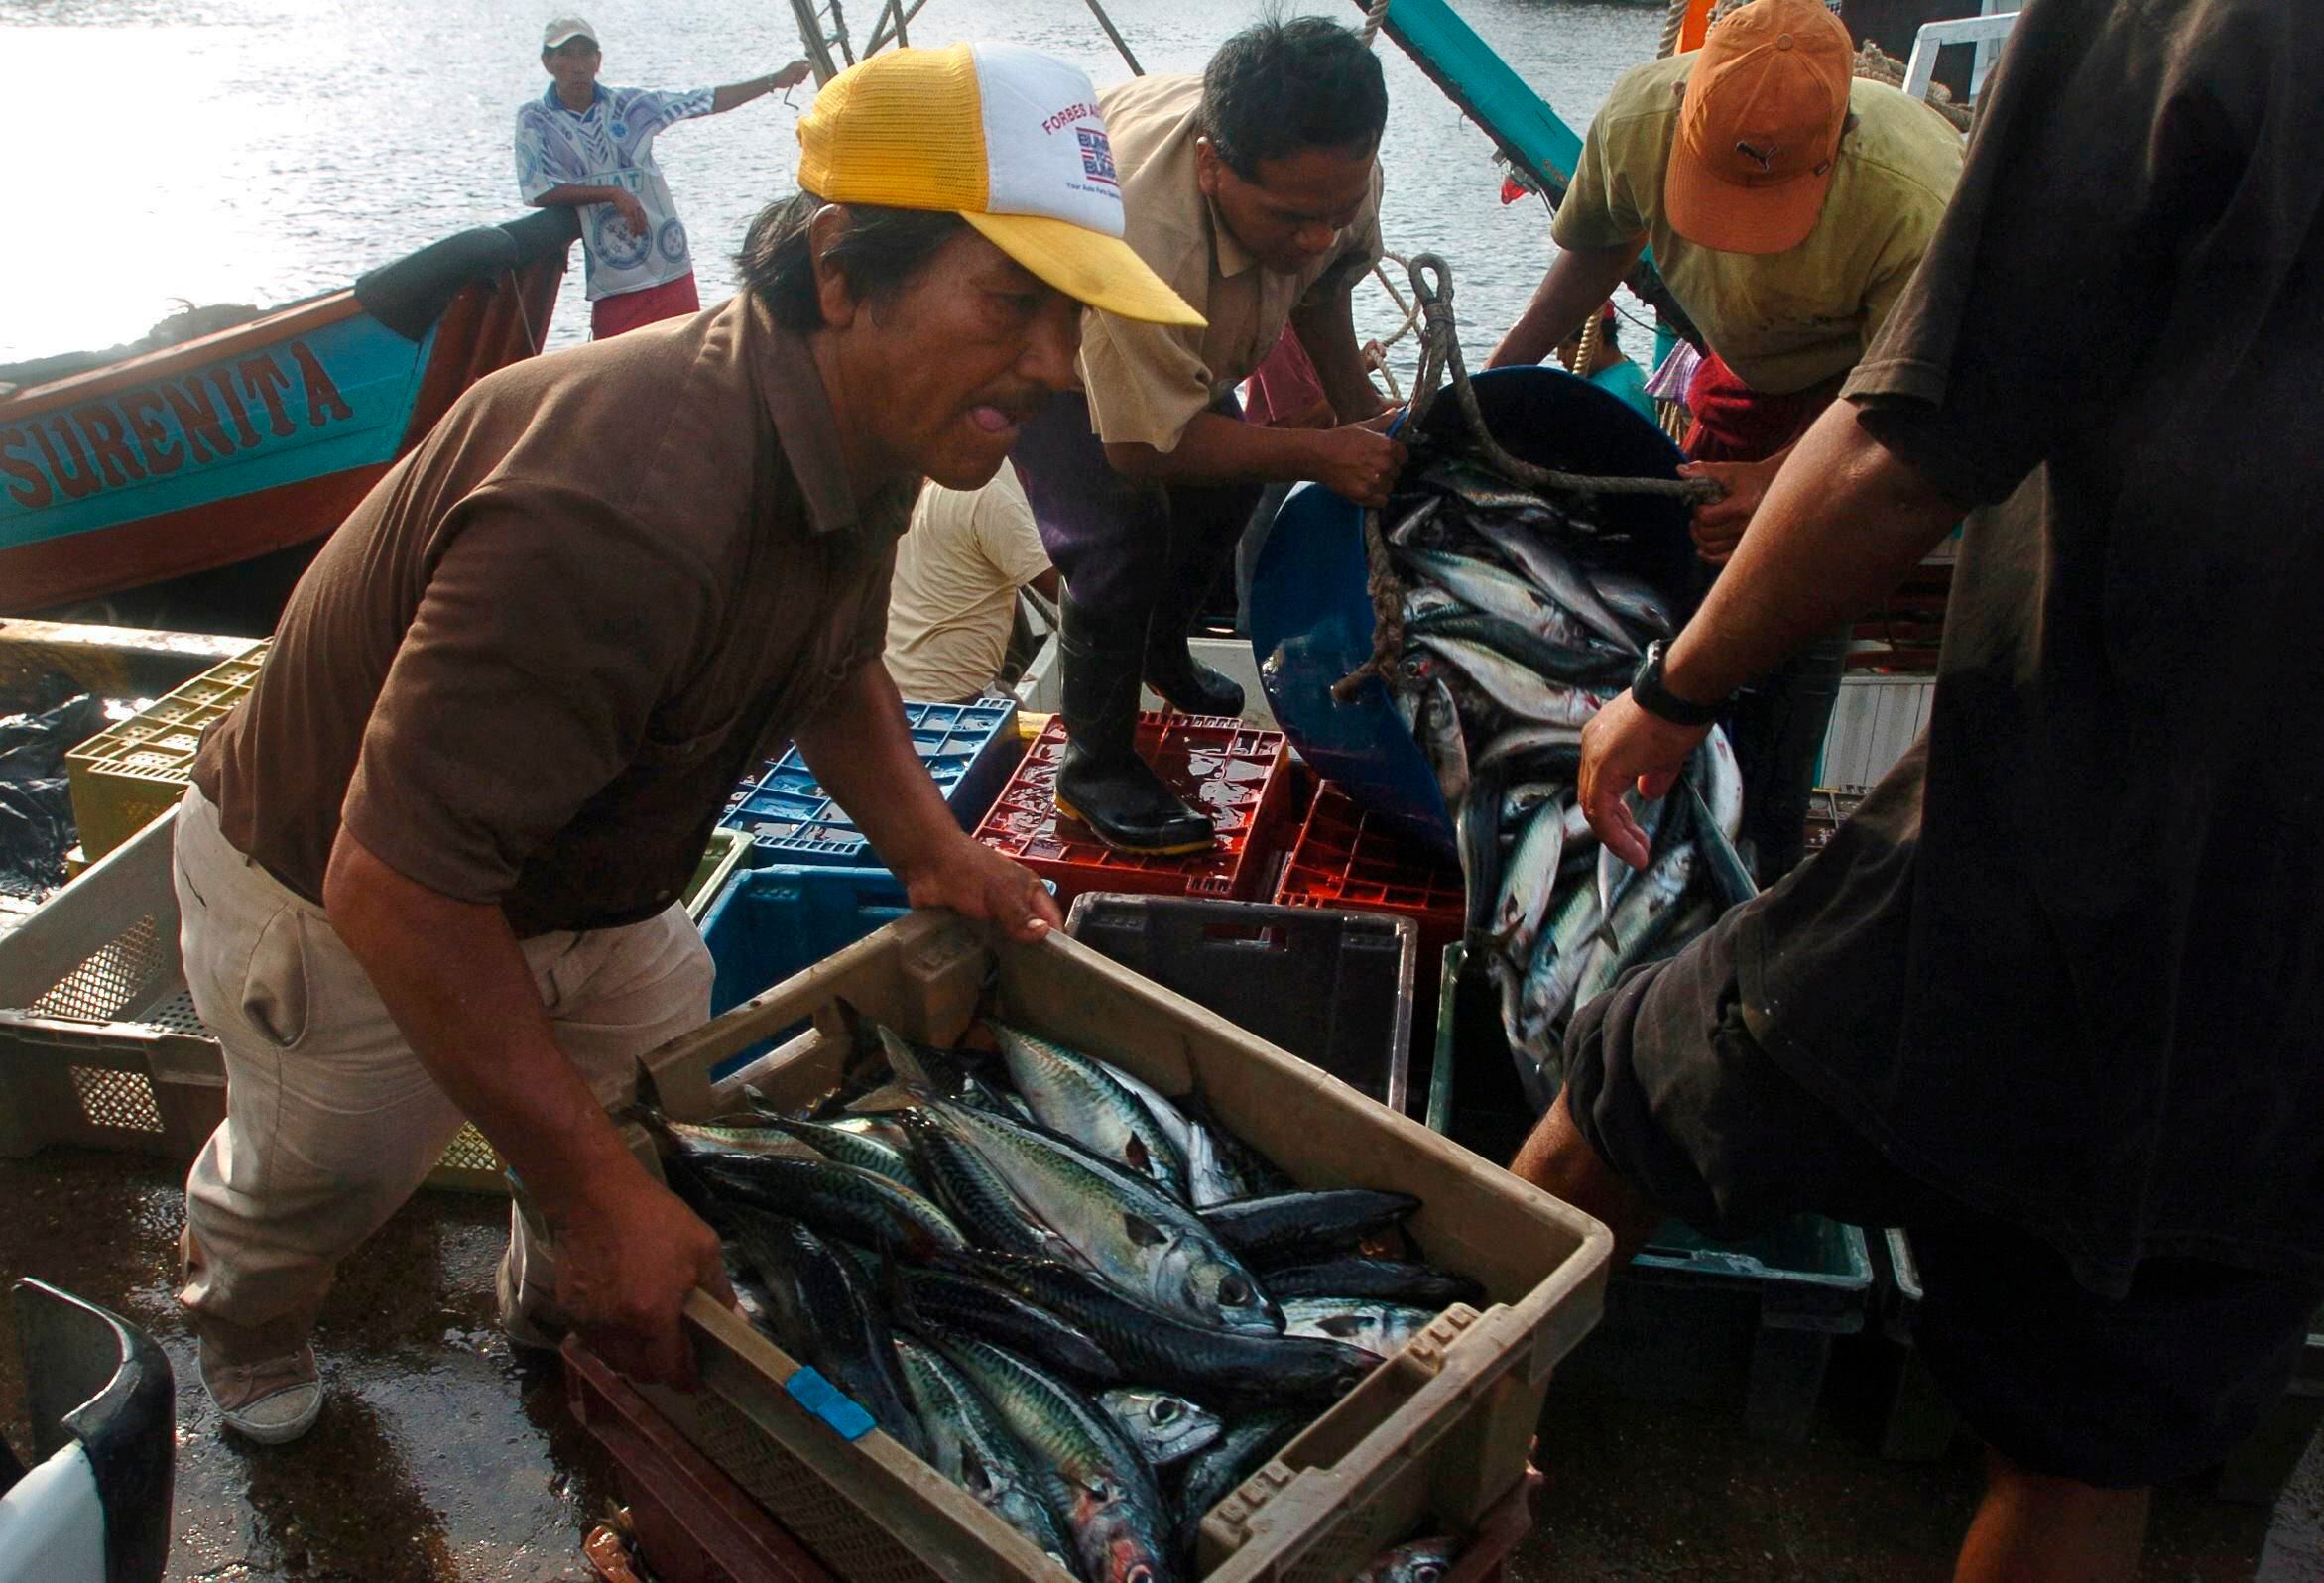 Fotografía de archivo en la que se registró a un grupo de pescadores artesanales, durante su faena de recolección, en el Puerto de Ilo, en el departamento de Moquegua. EFE/Sergio Urday 